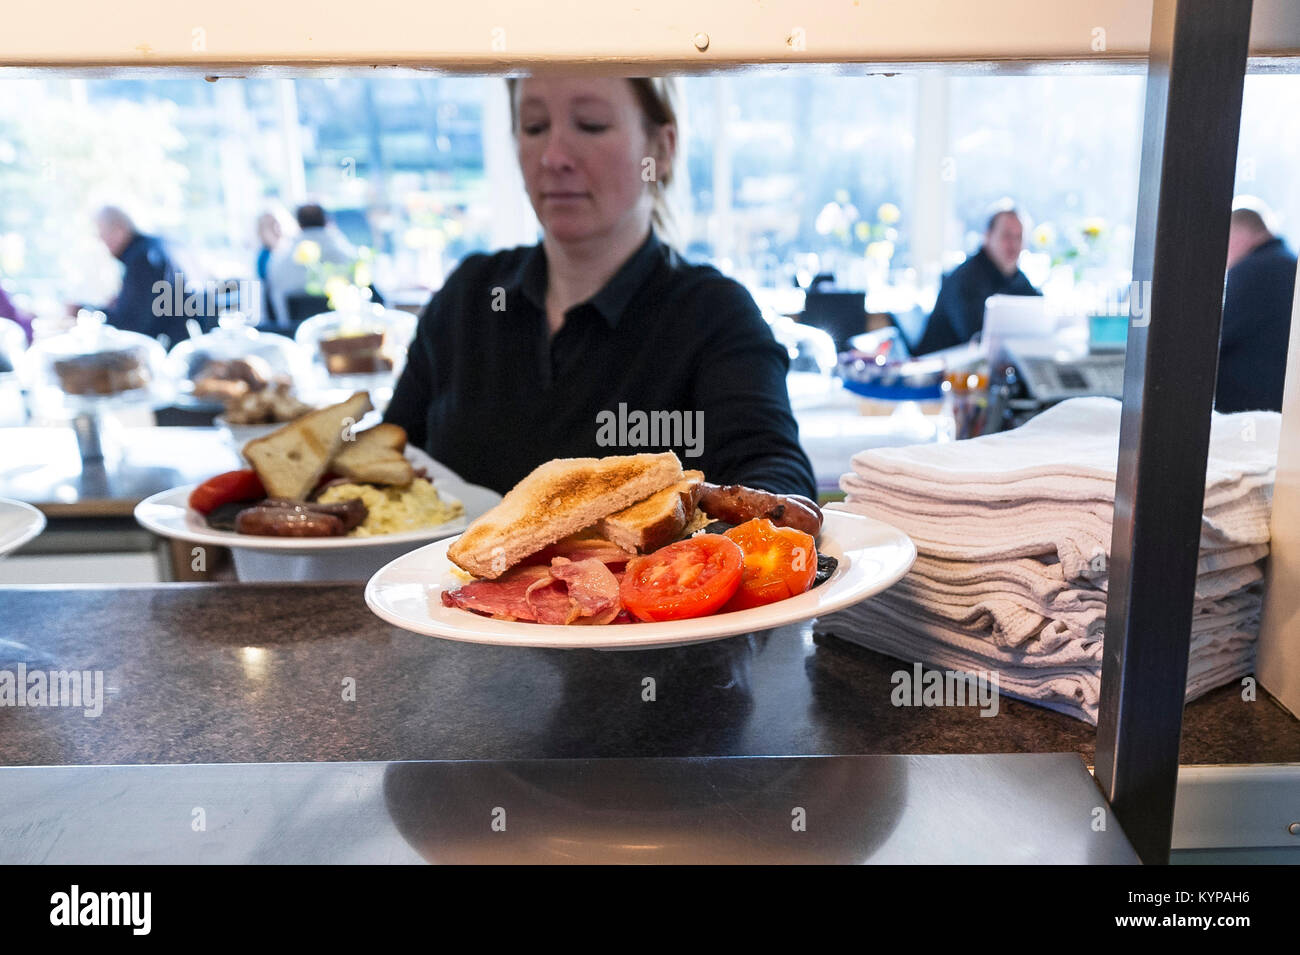 La préparation des aliments - deux anglais perçus au passage dans un restaurant Banque D'Images